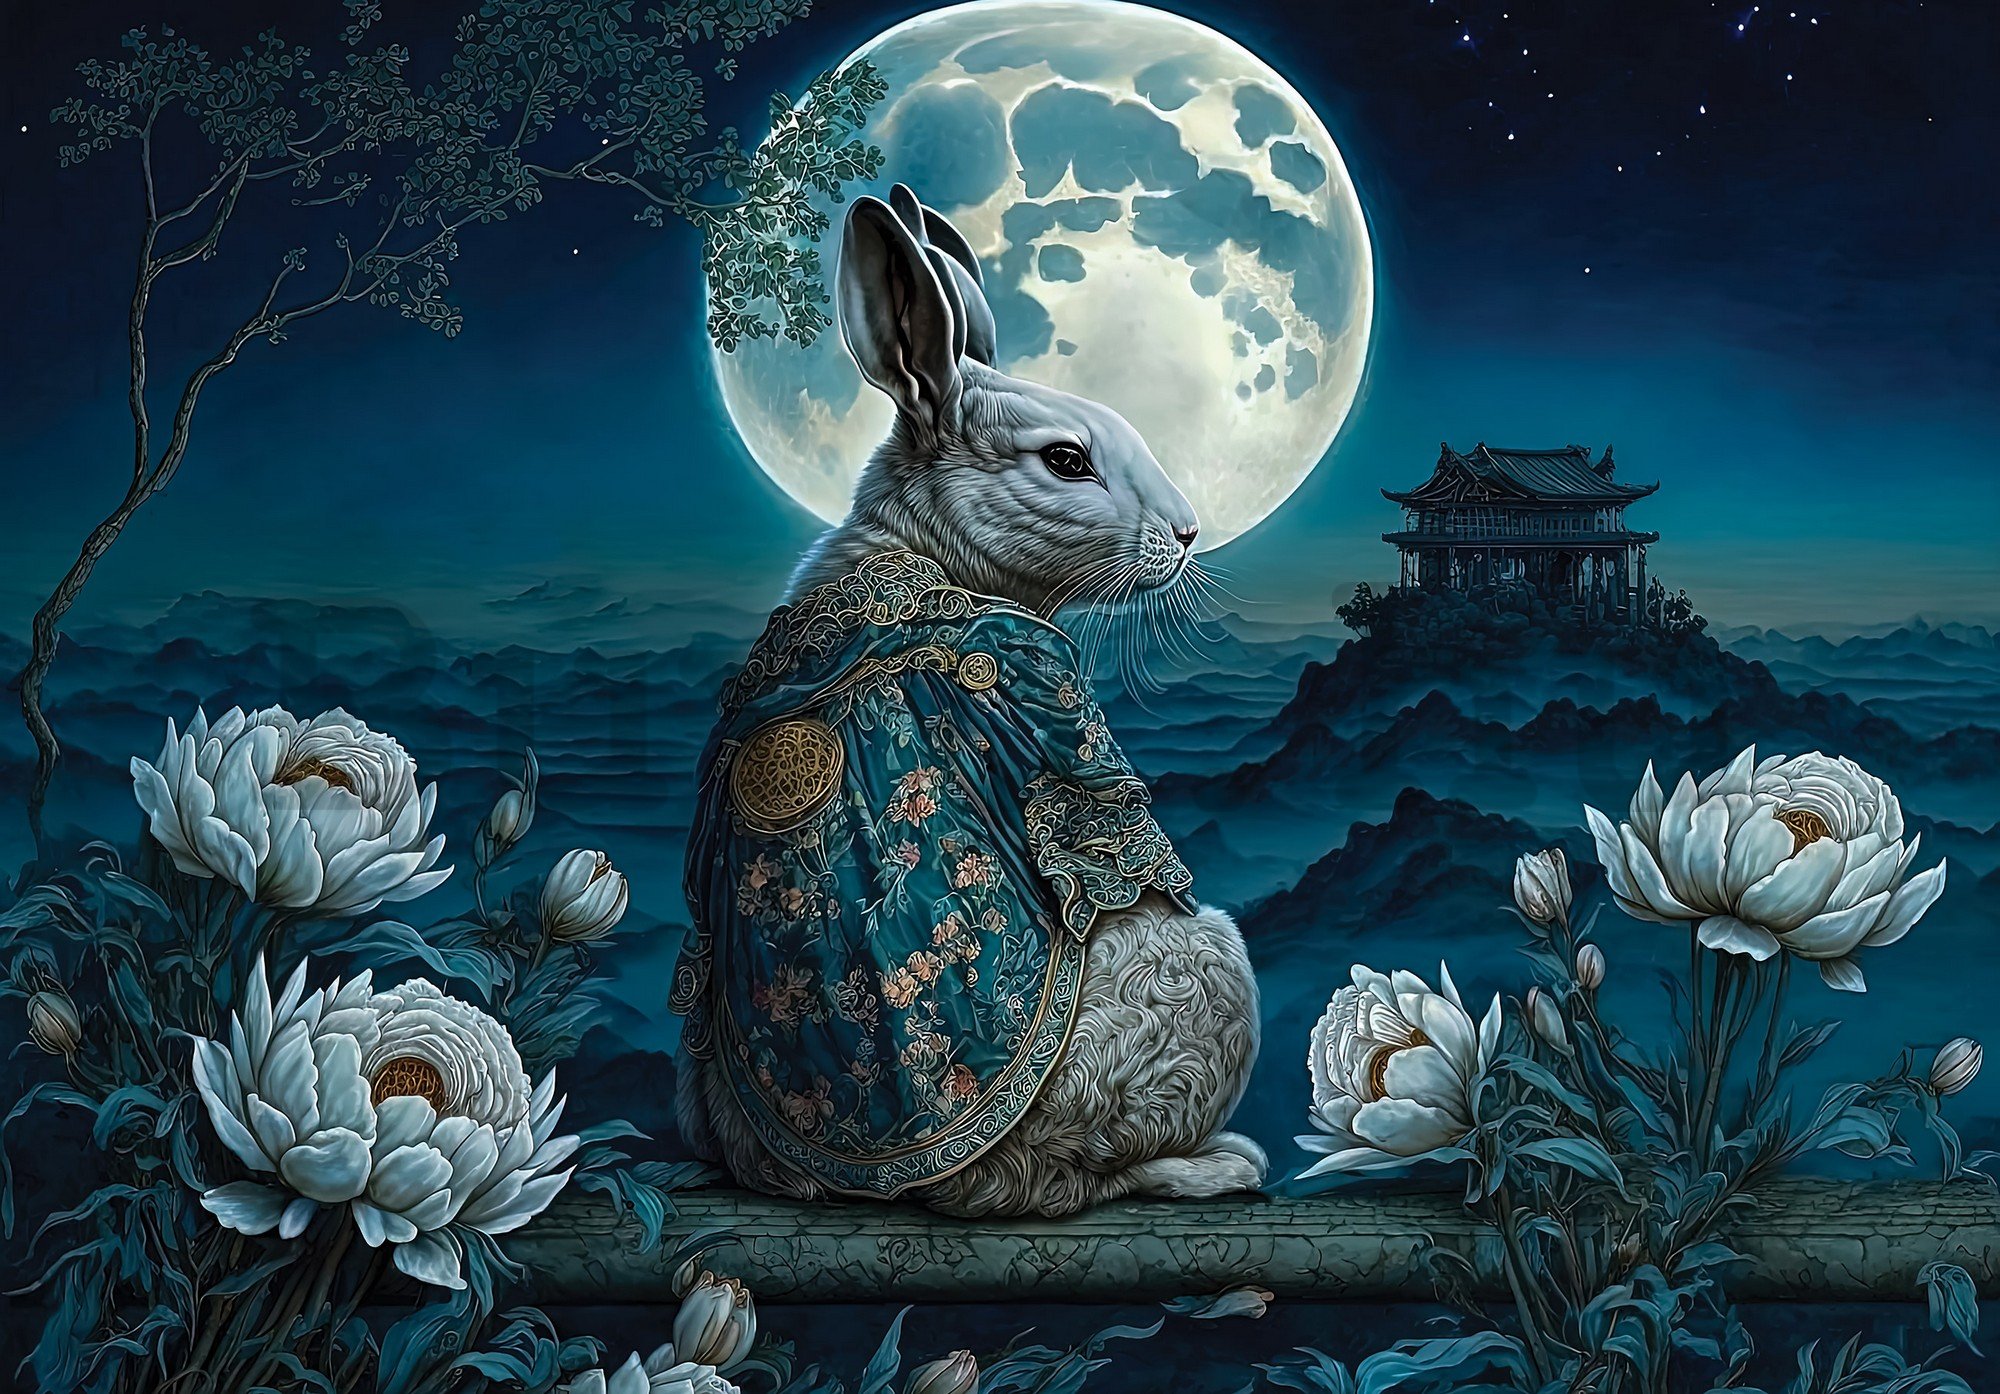 Vlies fotótapéta: Art Orient rabbit moon - 416x254 cm